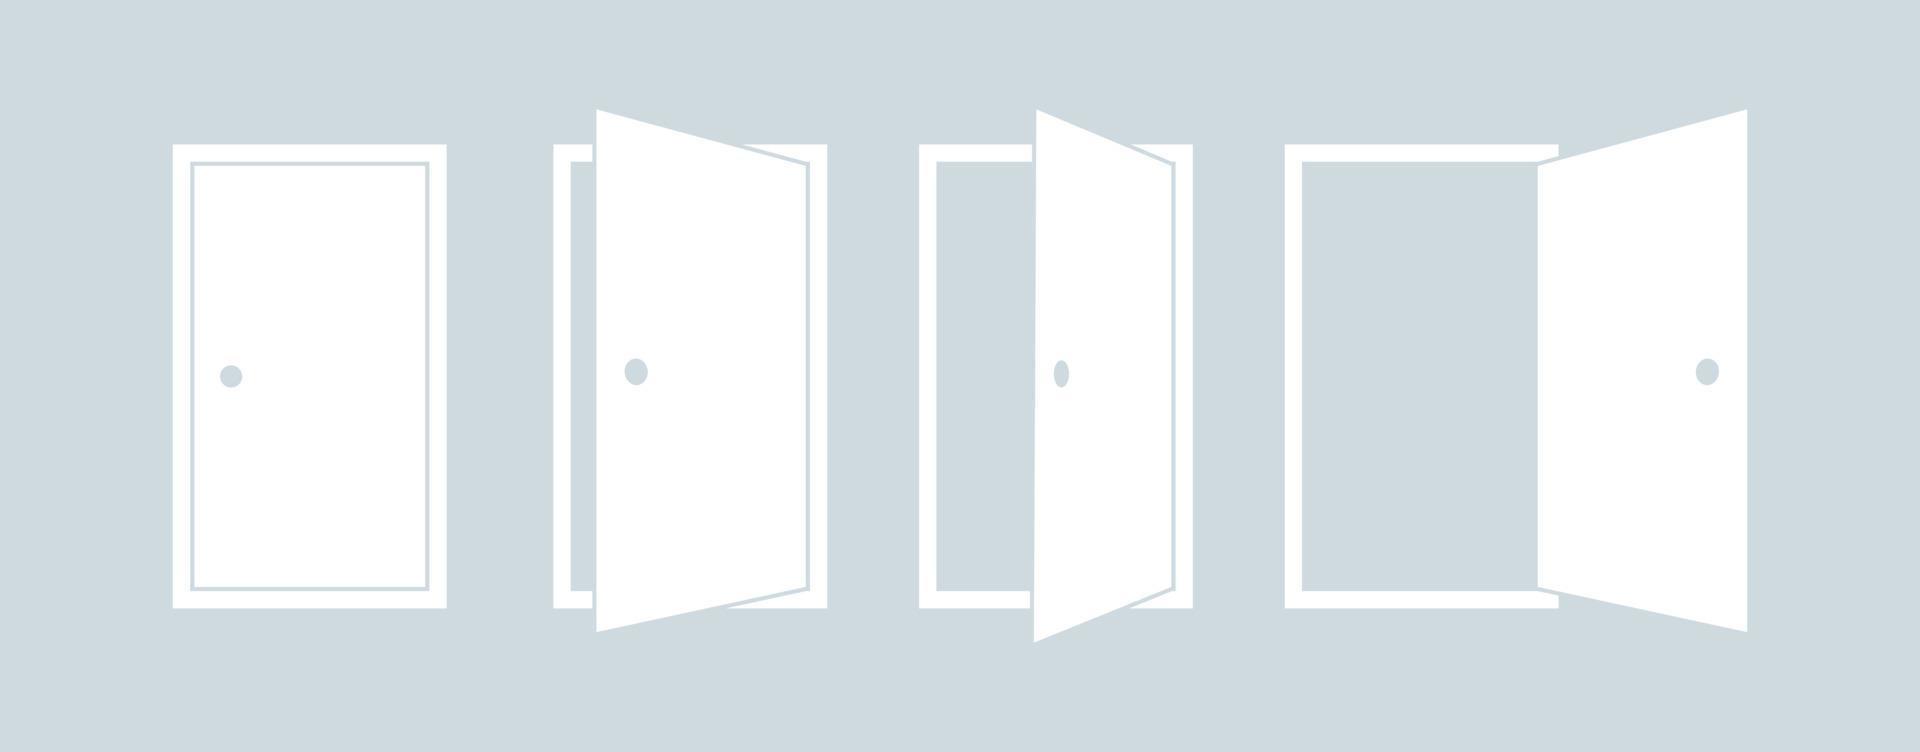 set di icone per aprire e chiudere la porta. illustrazione dell'icona di vettore della siluetta bianca della porta.